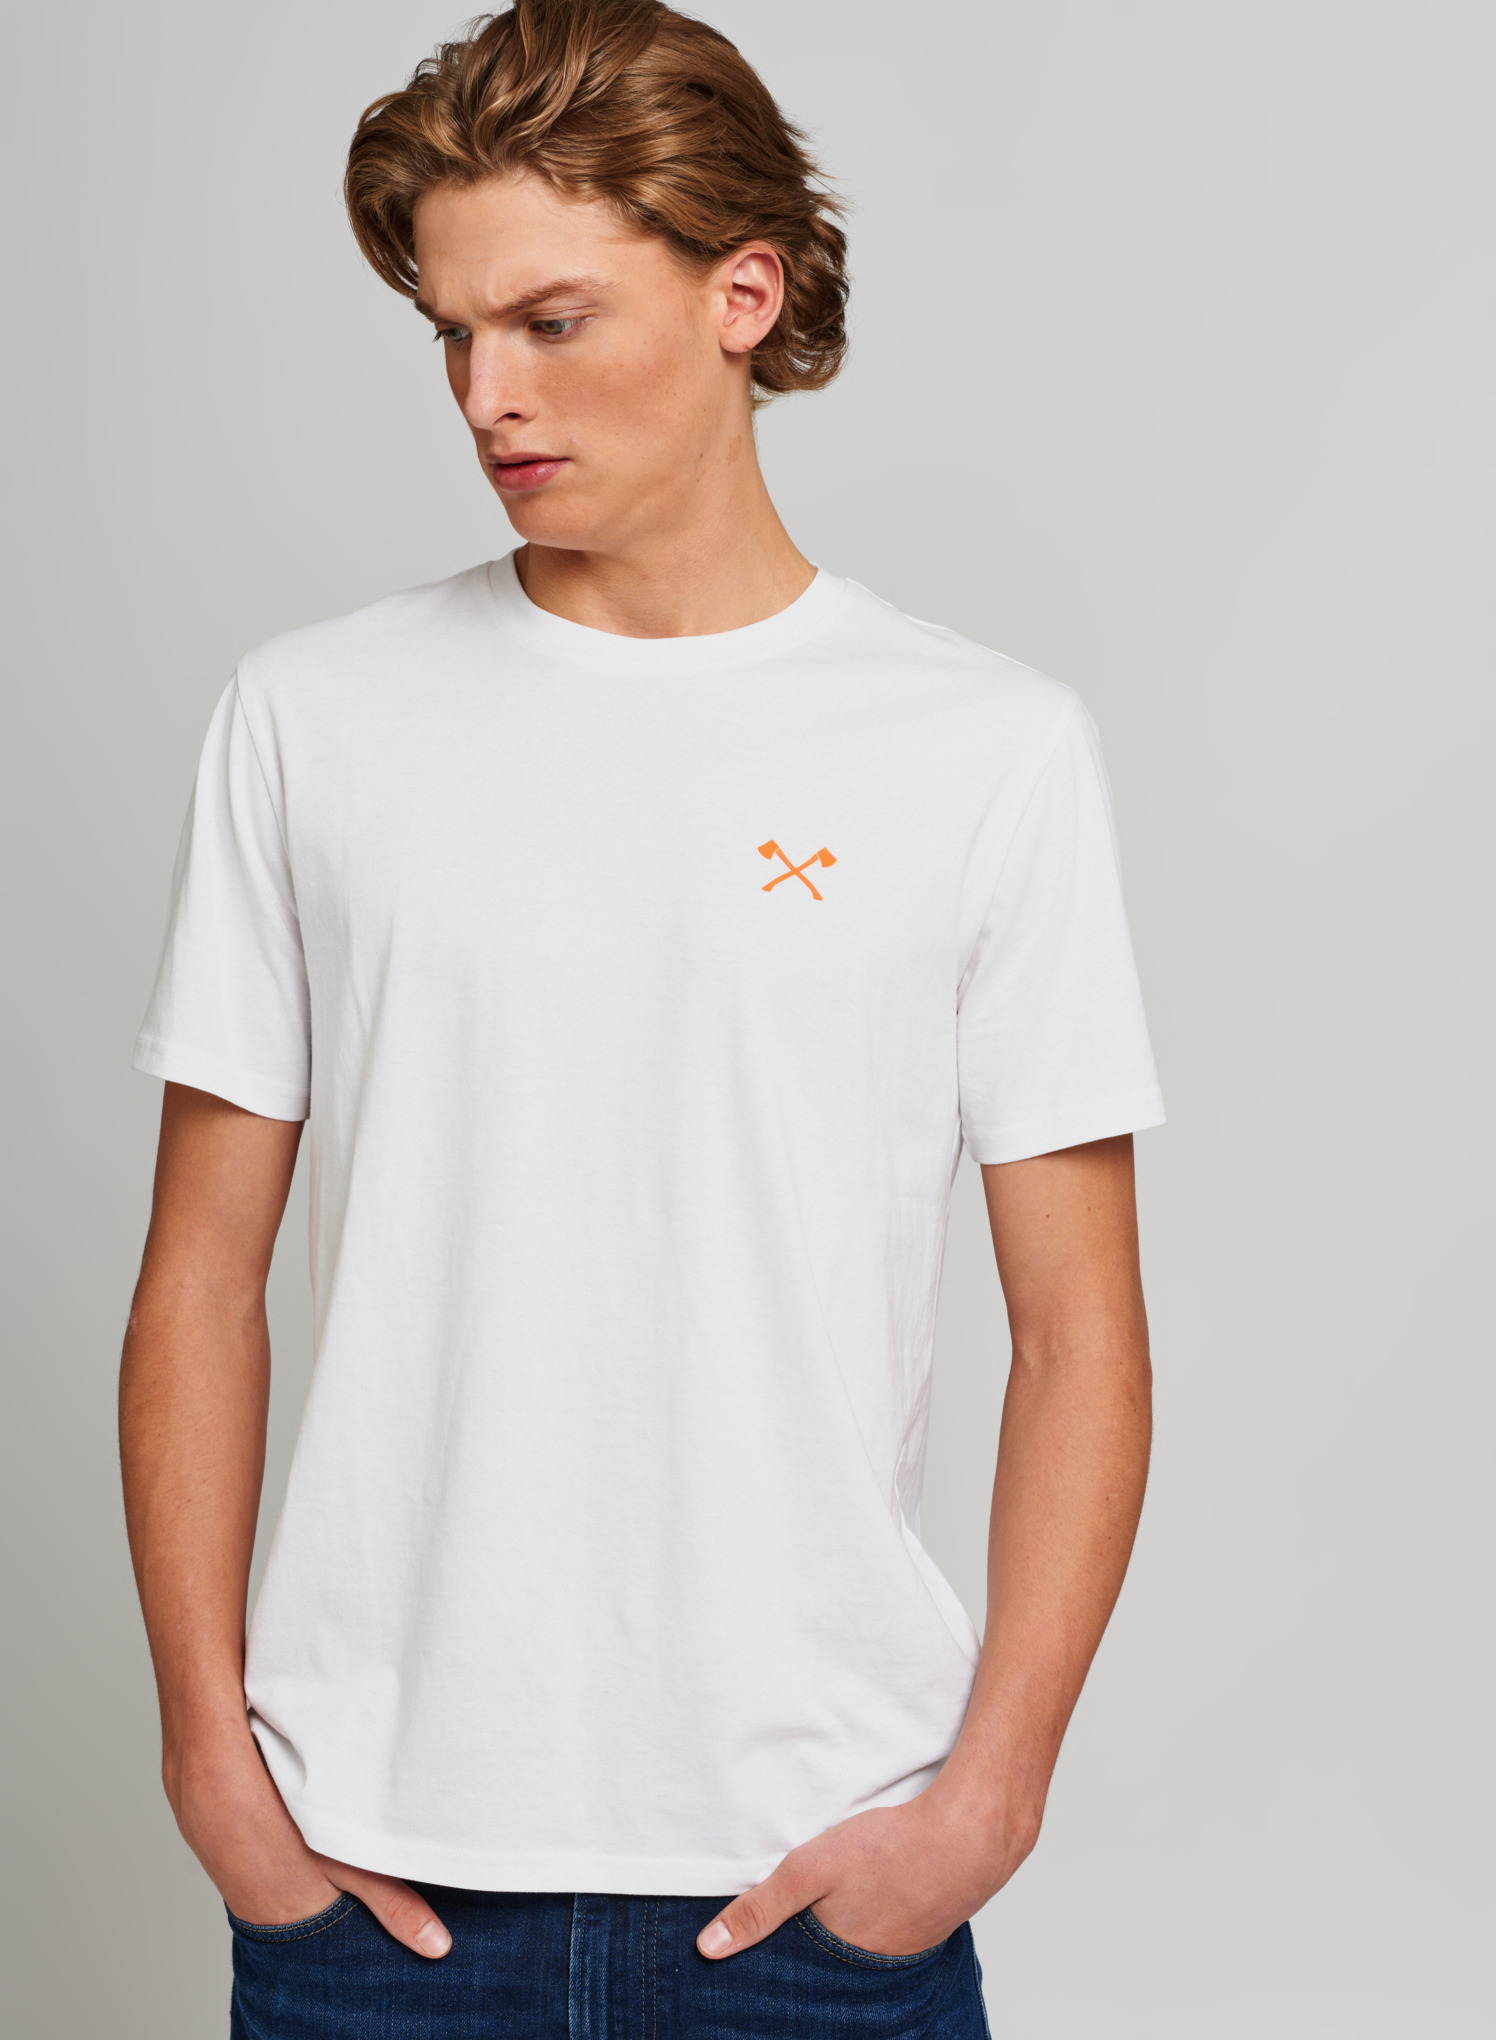 T-Shirt SMALL AXE weiß